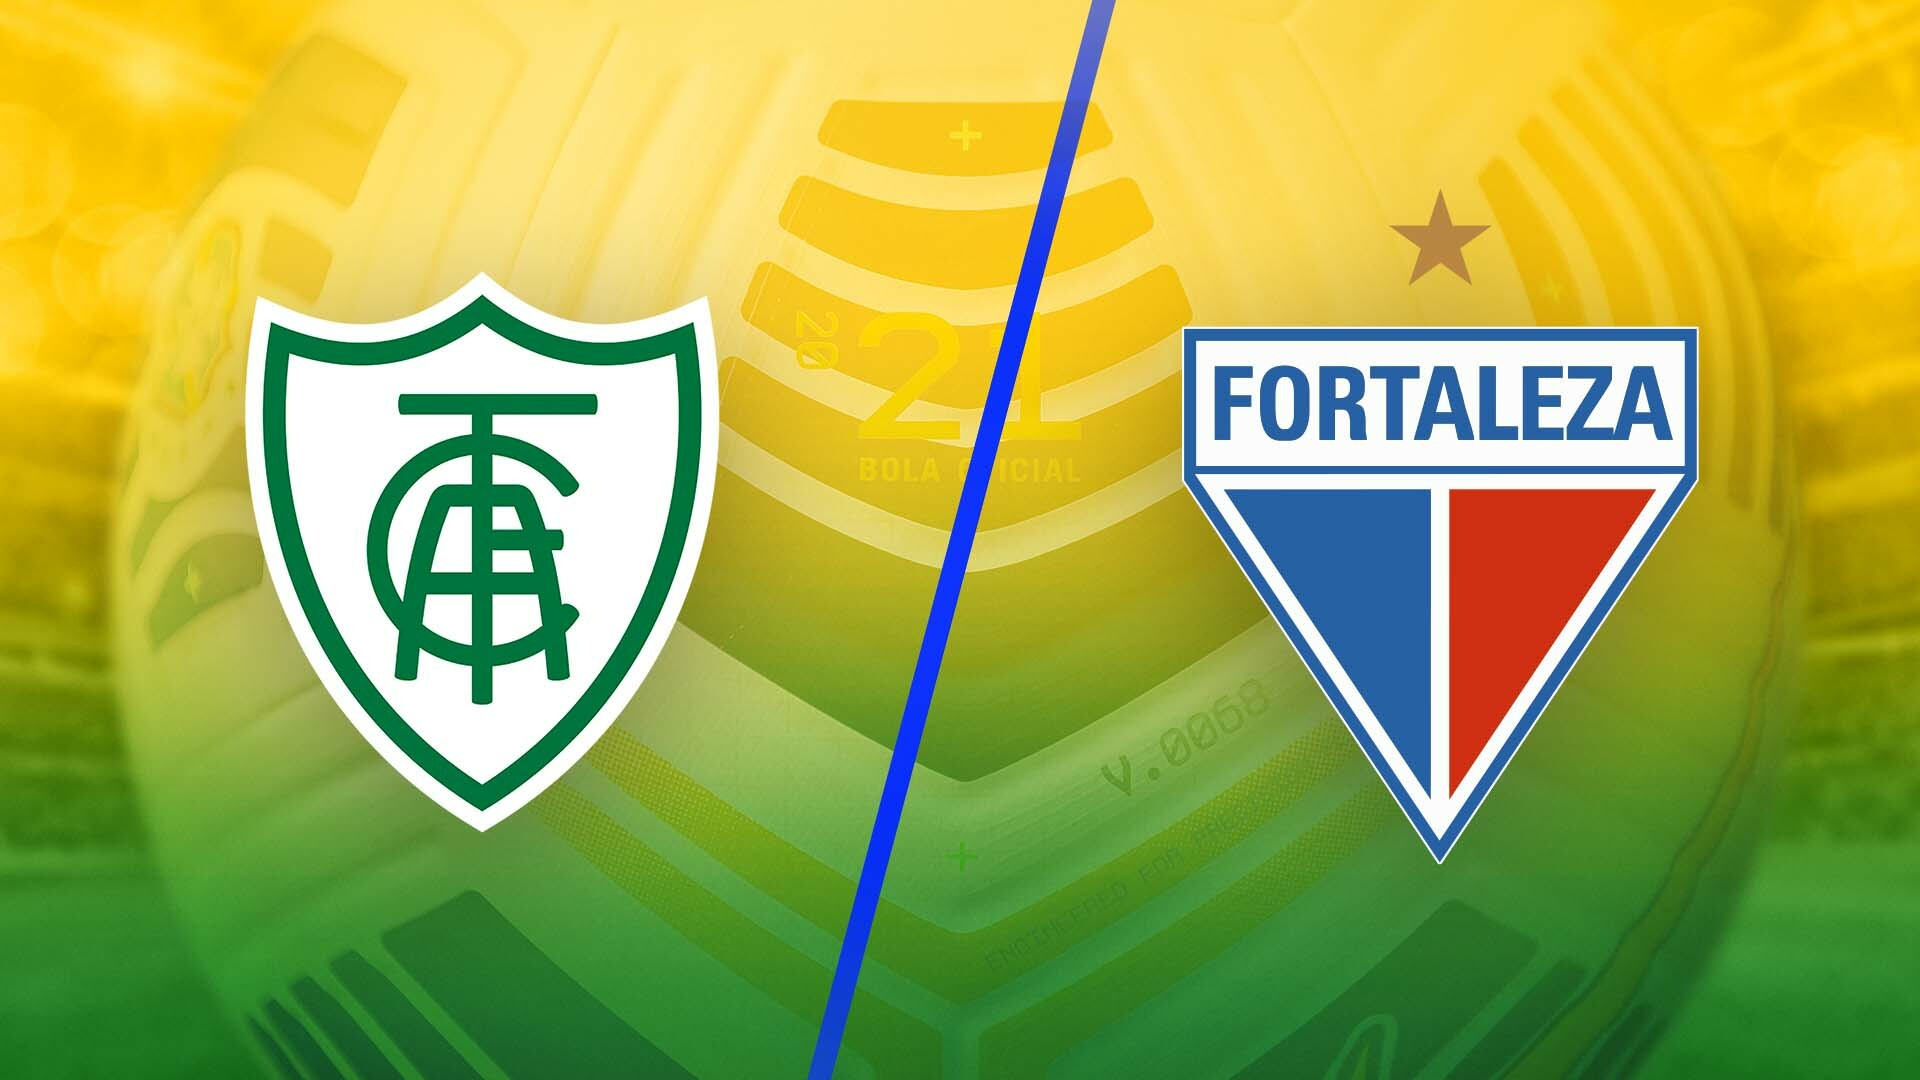 Watch Brazil Campeonato Brasileirão Série A: 2022 Highlights